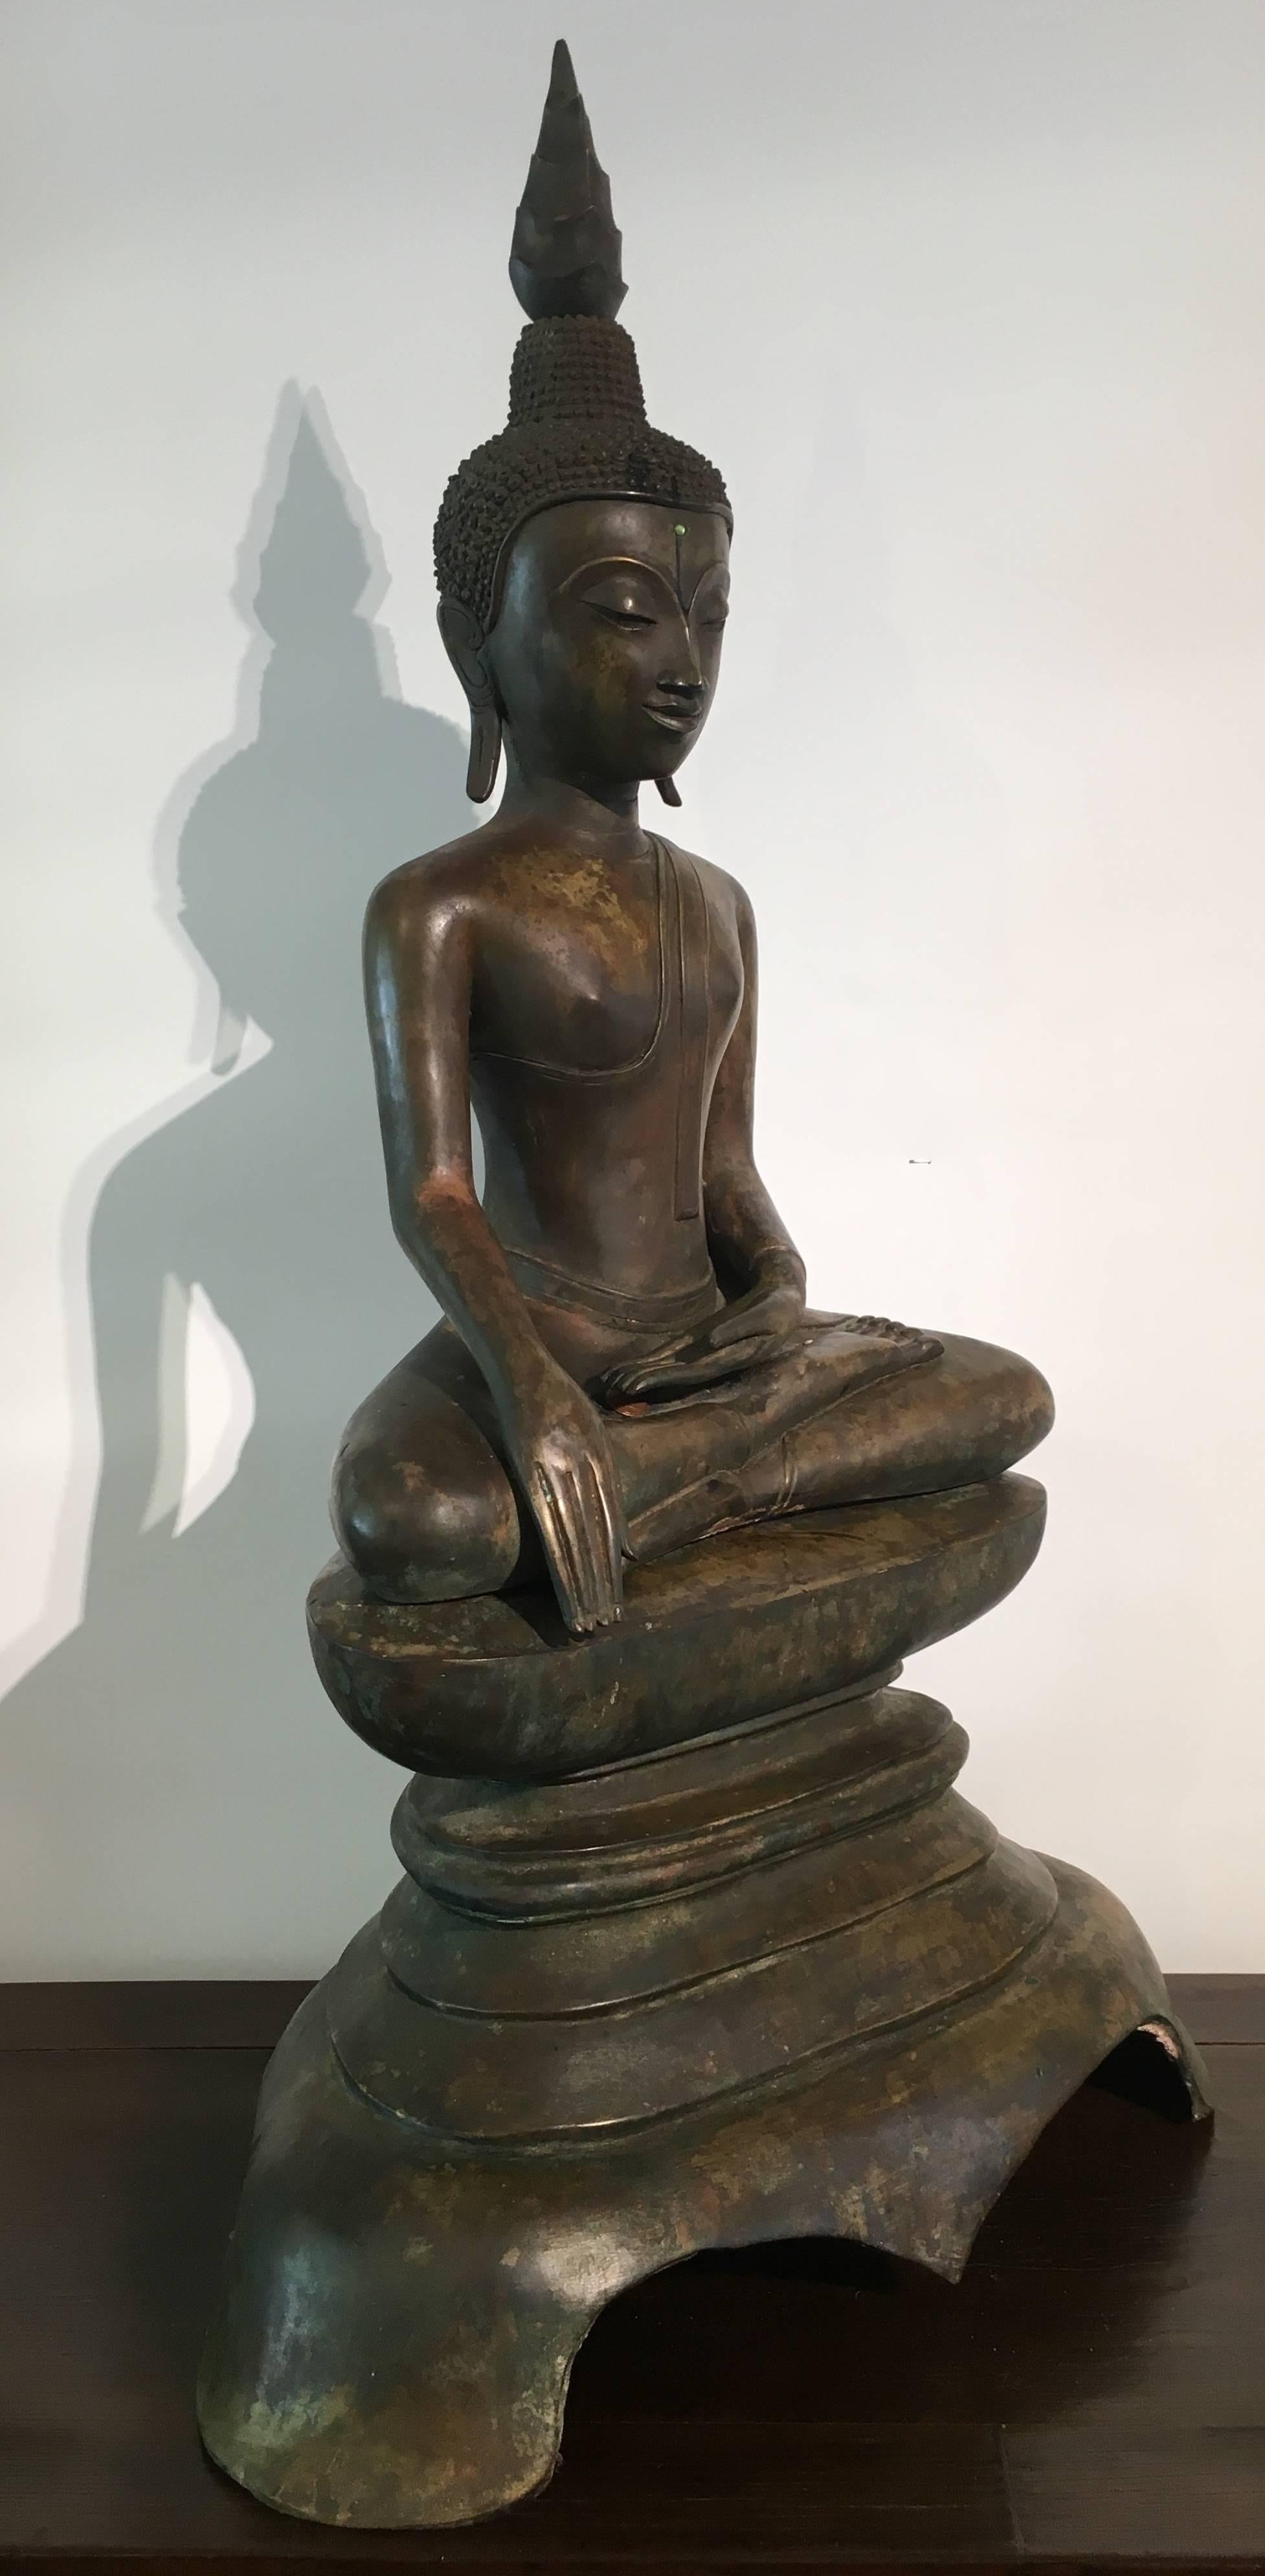 Eine schöne Figur des historischen Buddha Shakyamuni, sitzend in bhumisparsha, die den Moment der Erleuchtung des Buddha darstellt, Laos, 17. bis 18. Jahrhundert.
Der gut gegossene und mit einer schönen Patina versehene Buddha sitzt auf einem